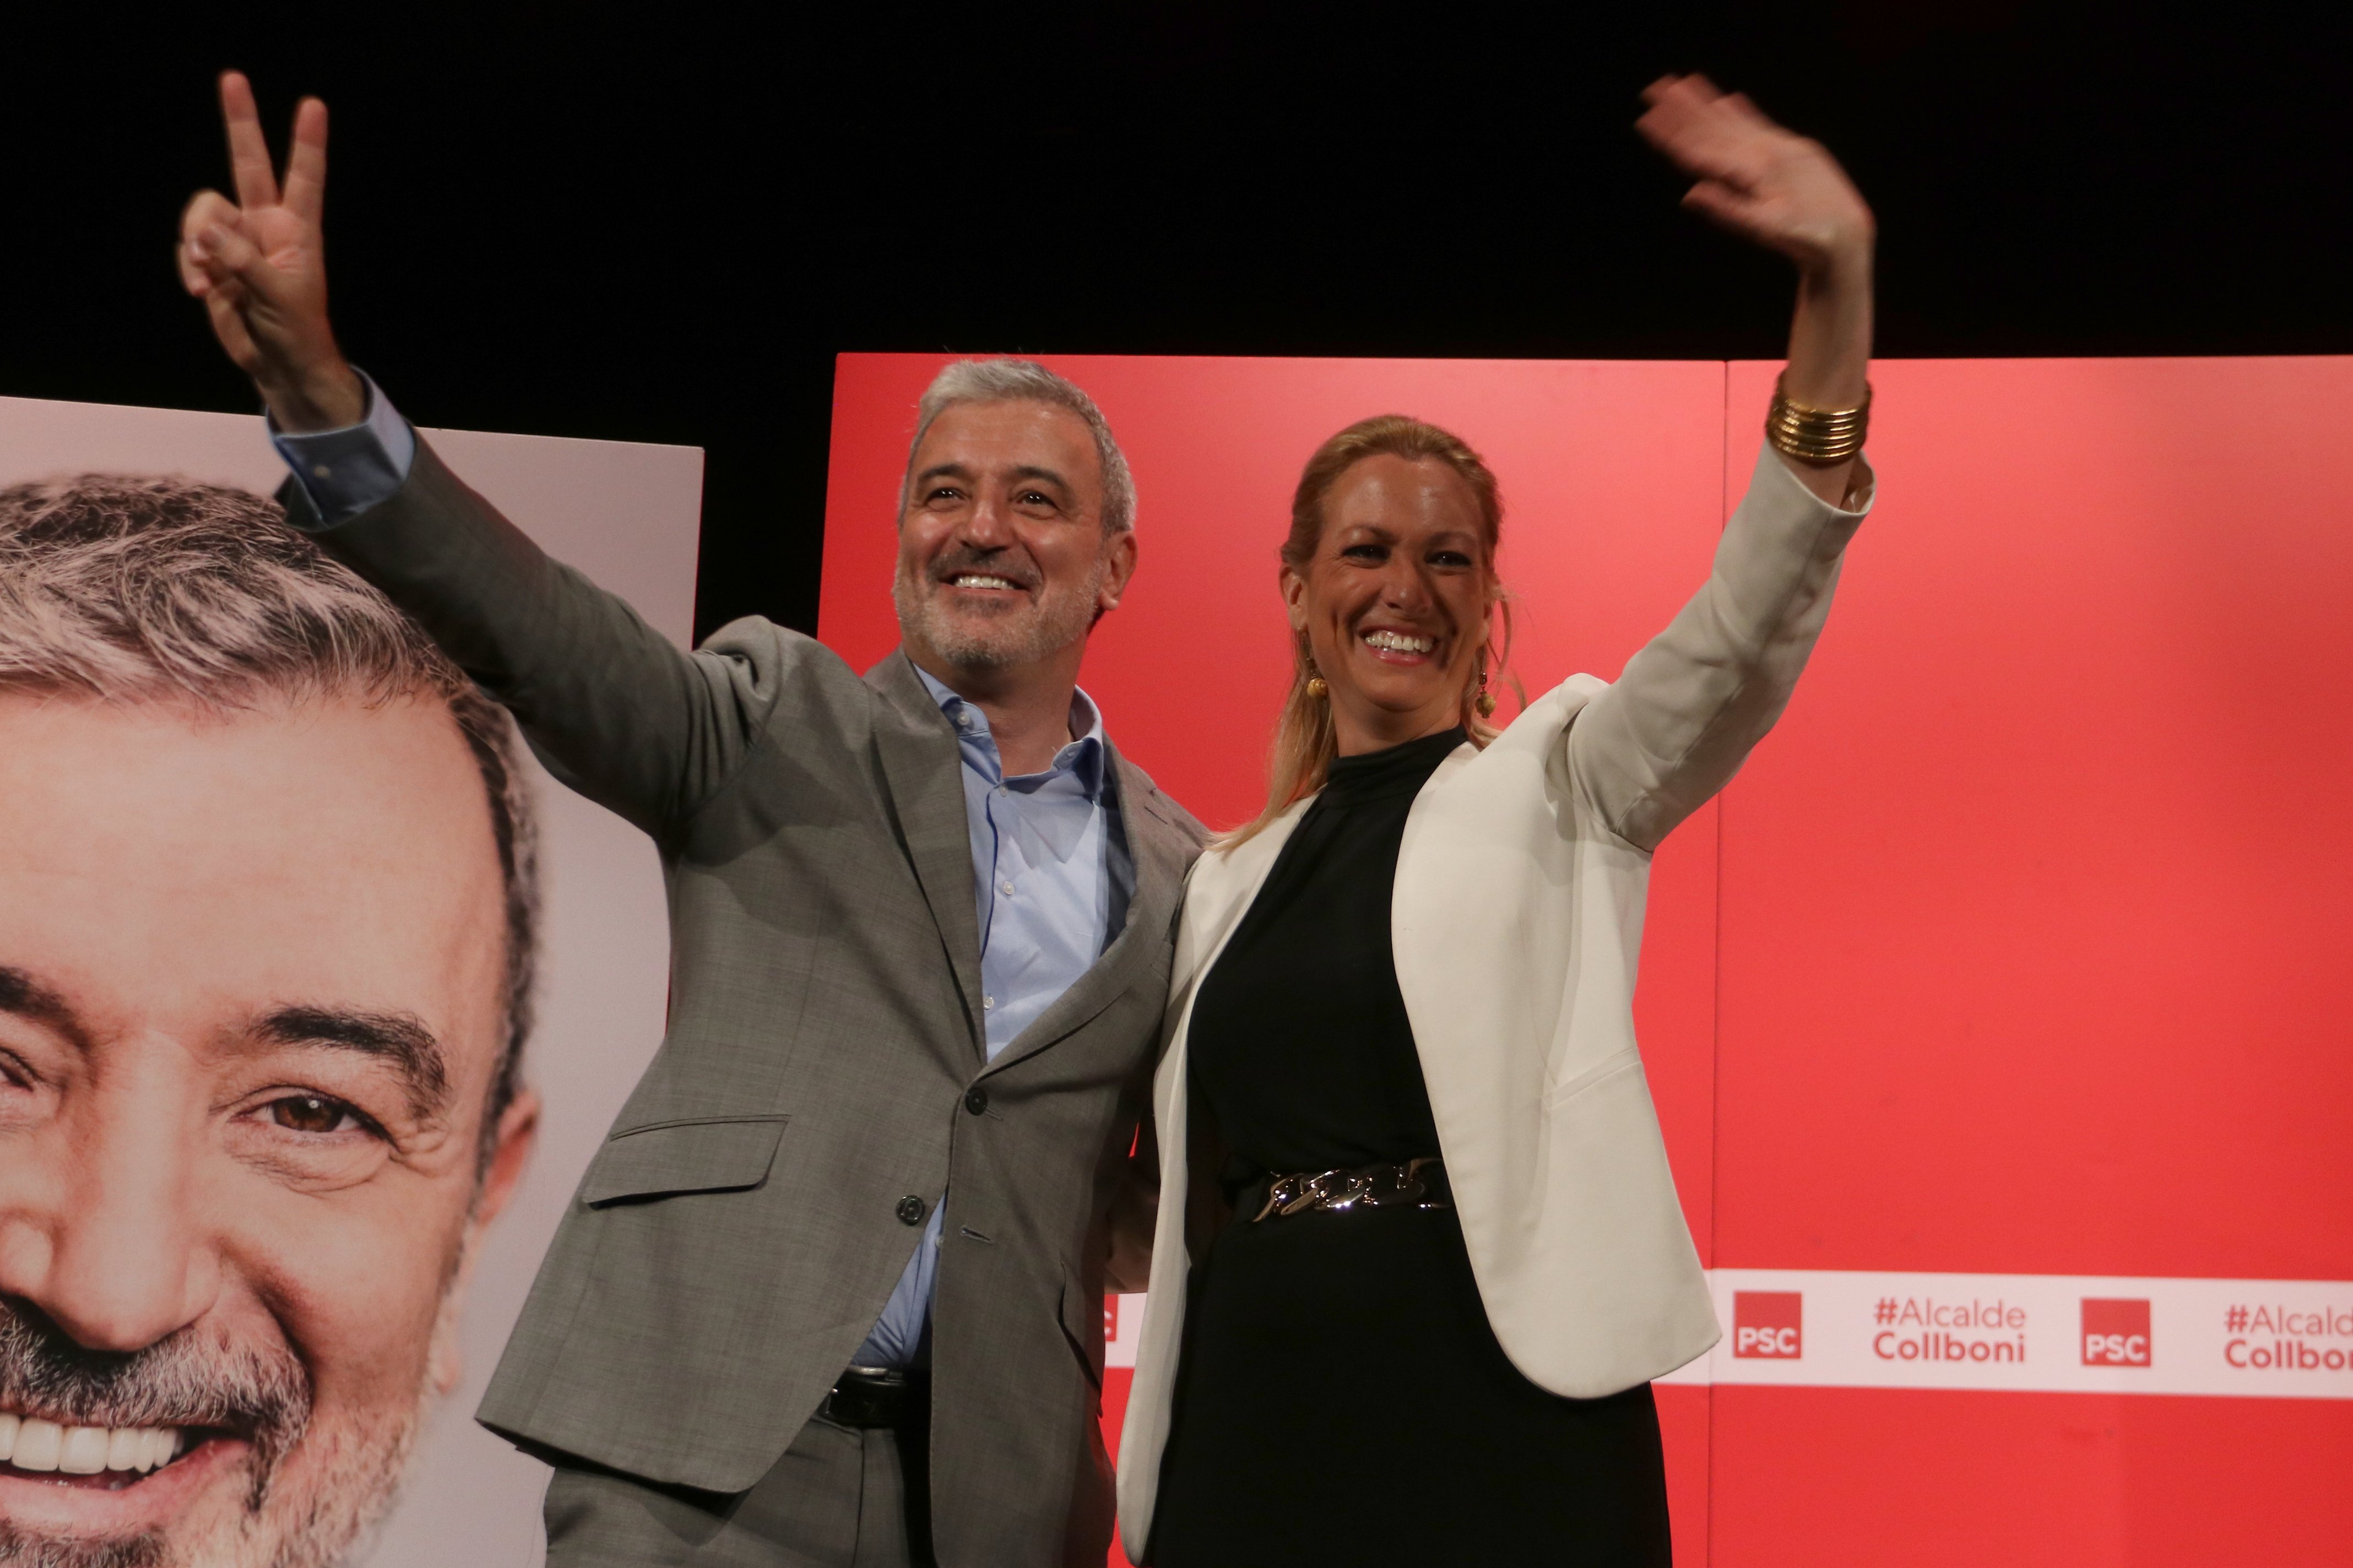 Collboni hi torna contra Trias: "És el candidat de la inseguretat jurídica i política"